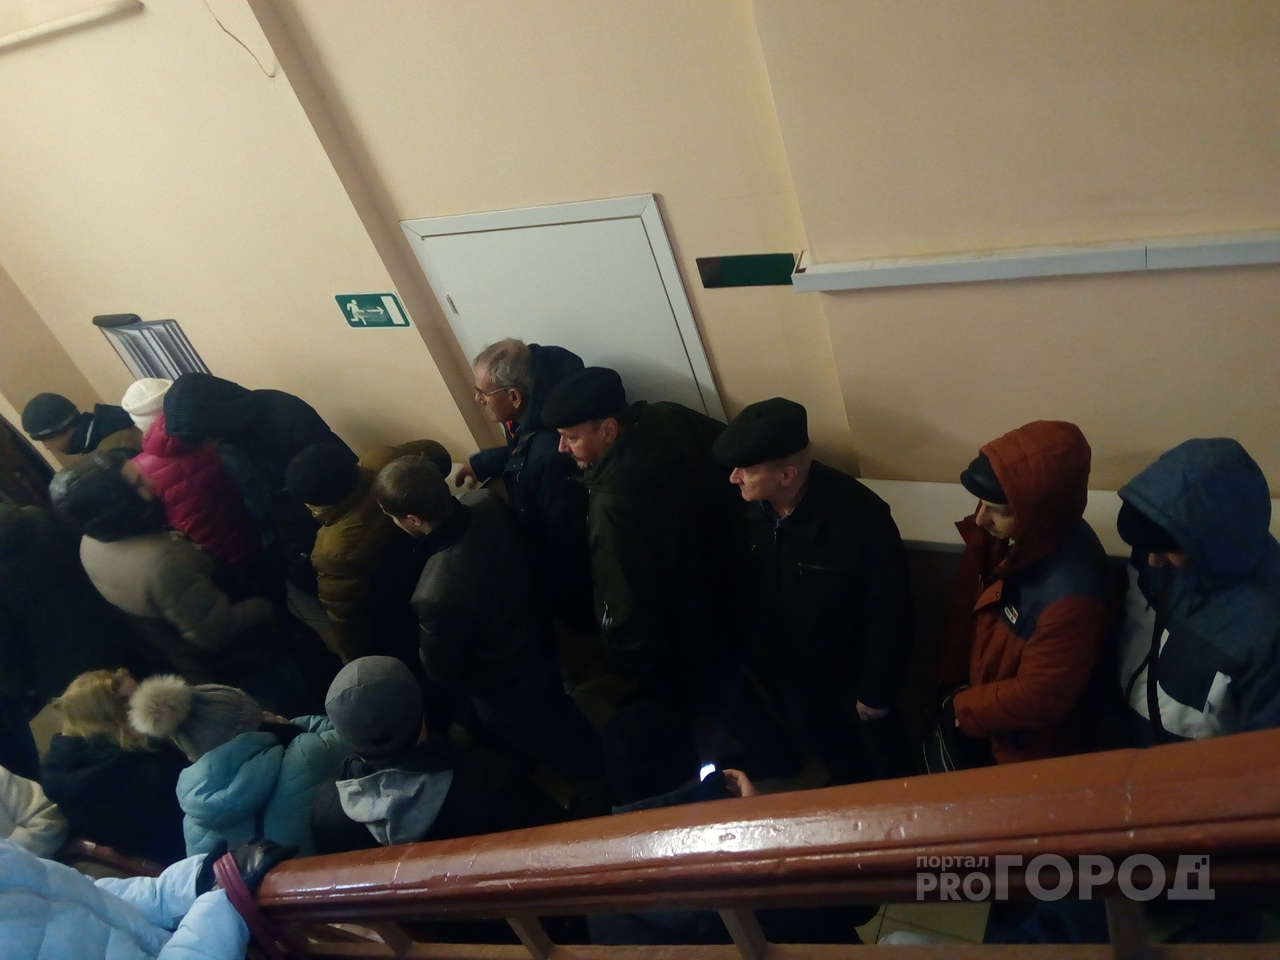 "Дайте сэкономить 4800": драки и обмороки во время штурма наркодиспансера в Ярославле